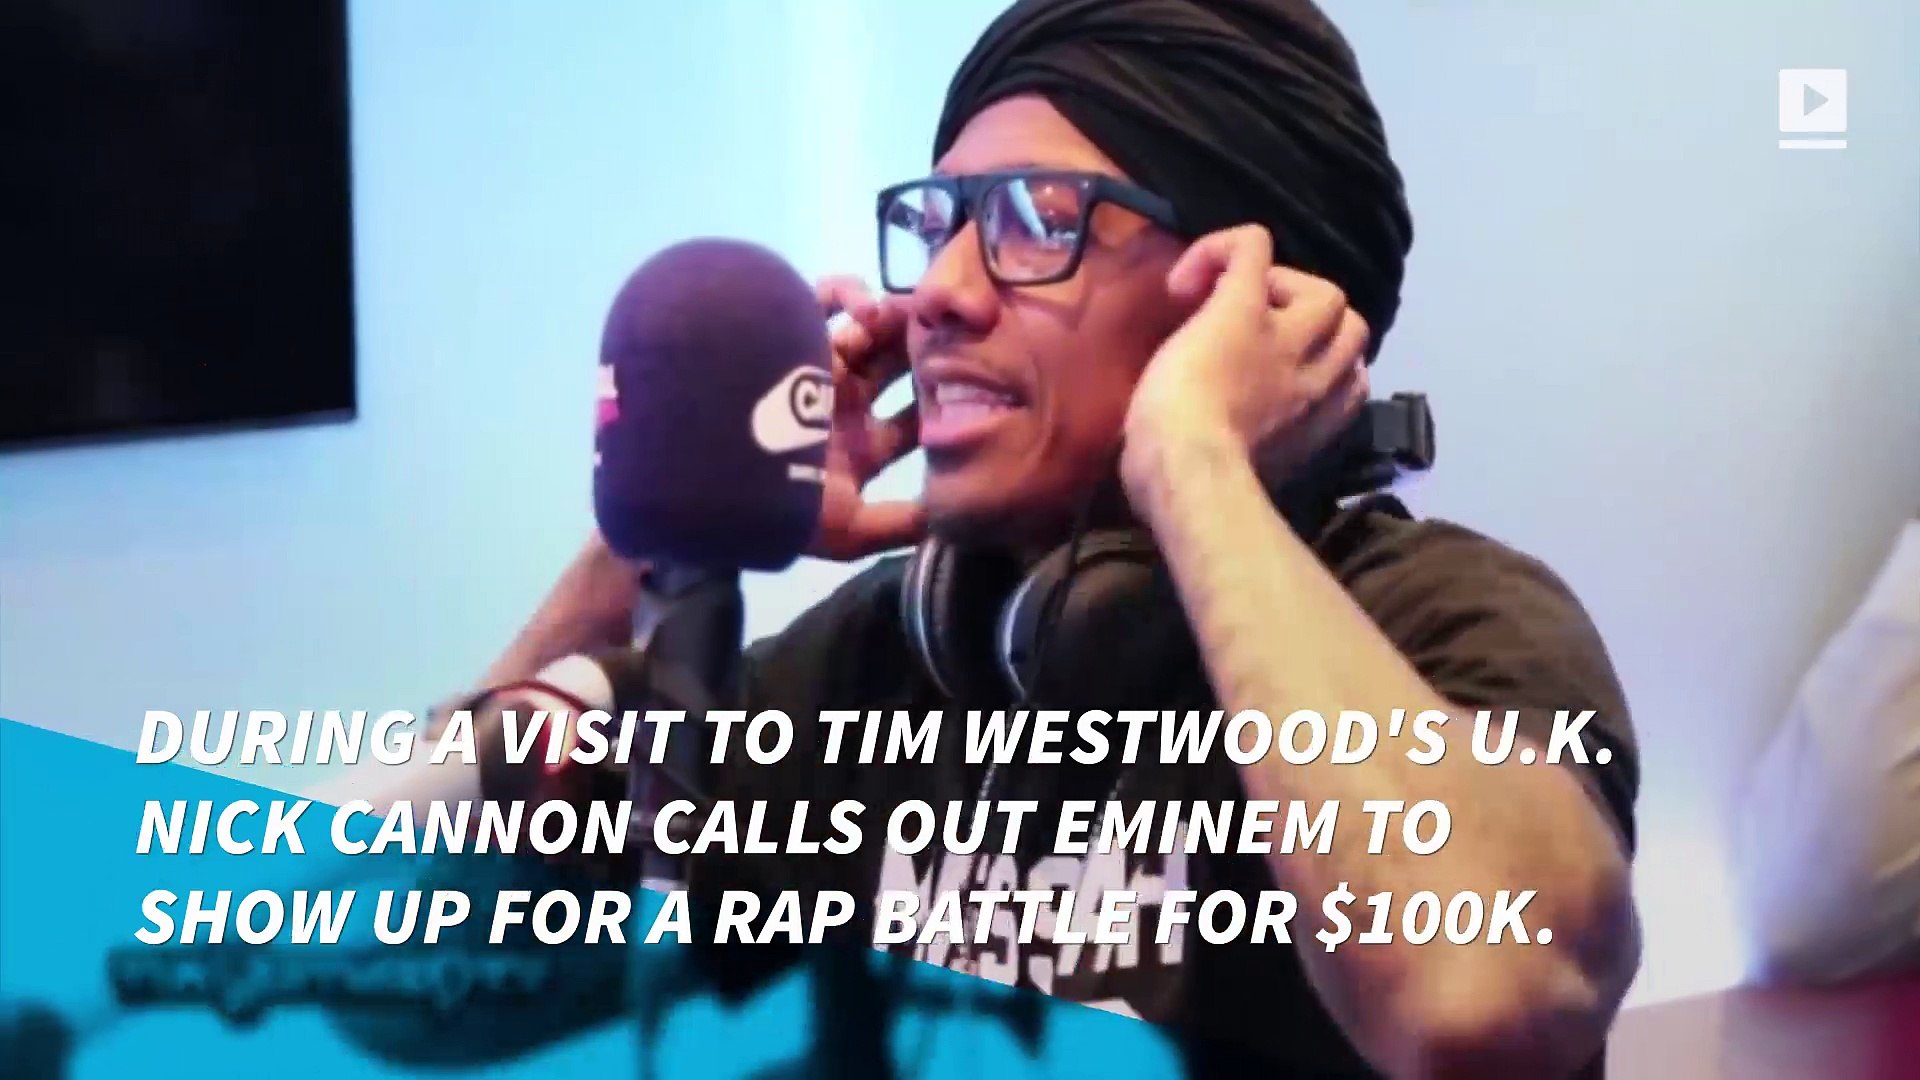 Nick Cannon Challenges Eminem to $100,000 Rap Battle